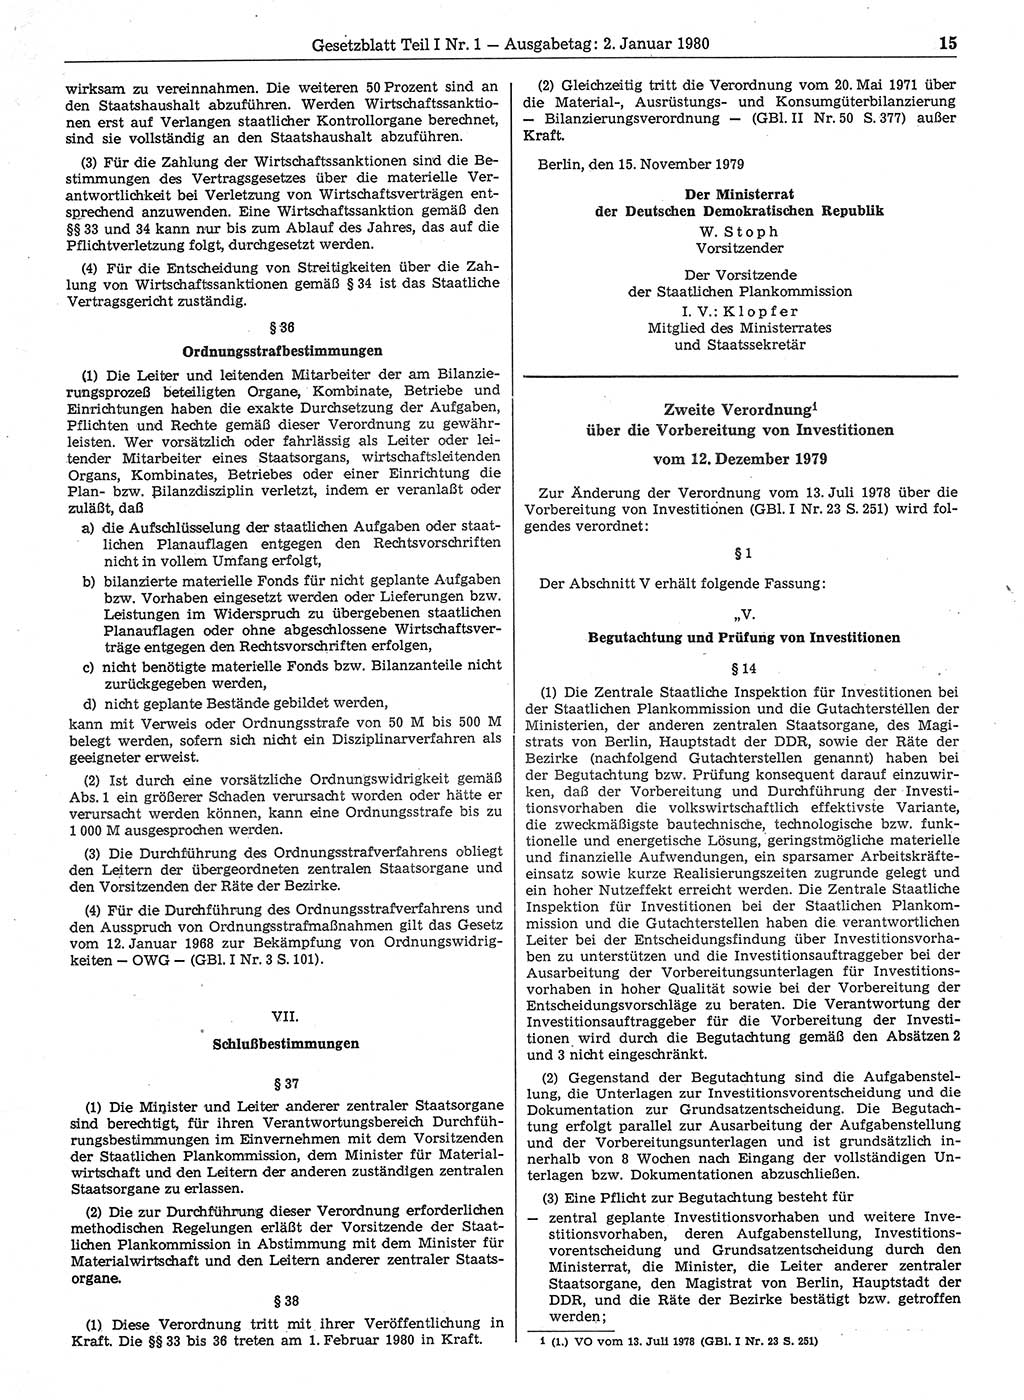 Gesetzblatt (GBl.) der Deutschen Demokratischen Republik (DDR) Teil Ⅰ 1980, Seite 15 (GBl. DDR Ⅰ 1980, S. 15)